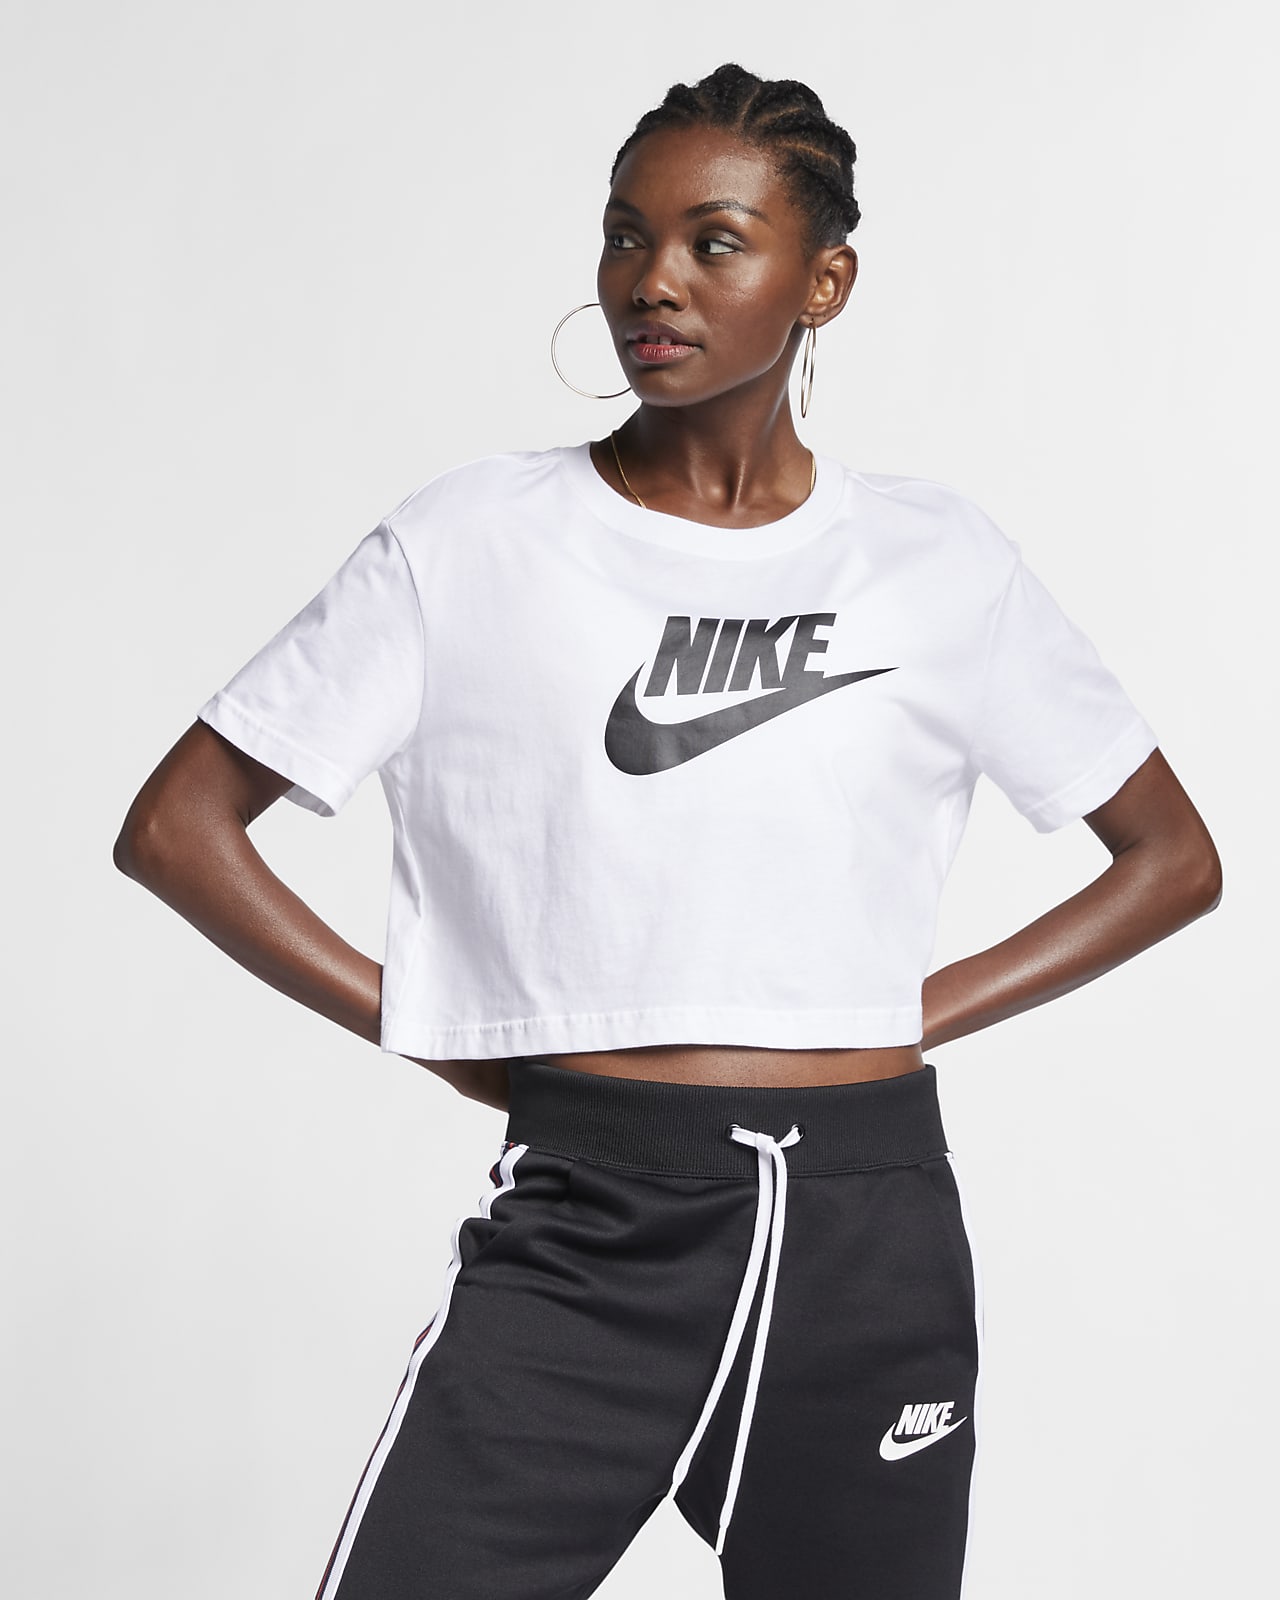 Adaptación Investigación Conversacional Nike Tshirt Women Factory Sale, GET 56% OFF, sportsregras.com